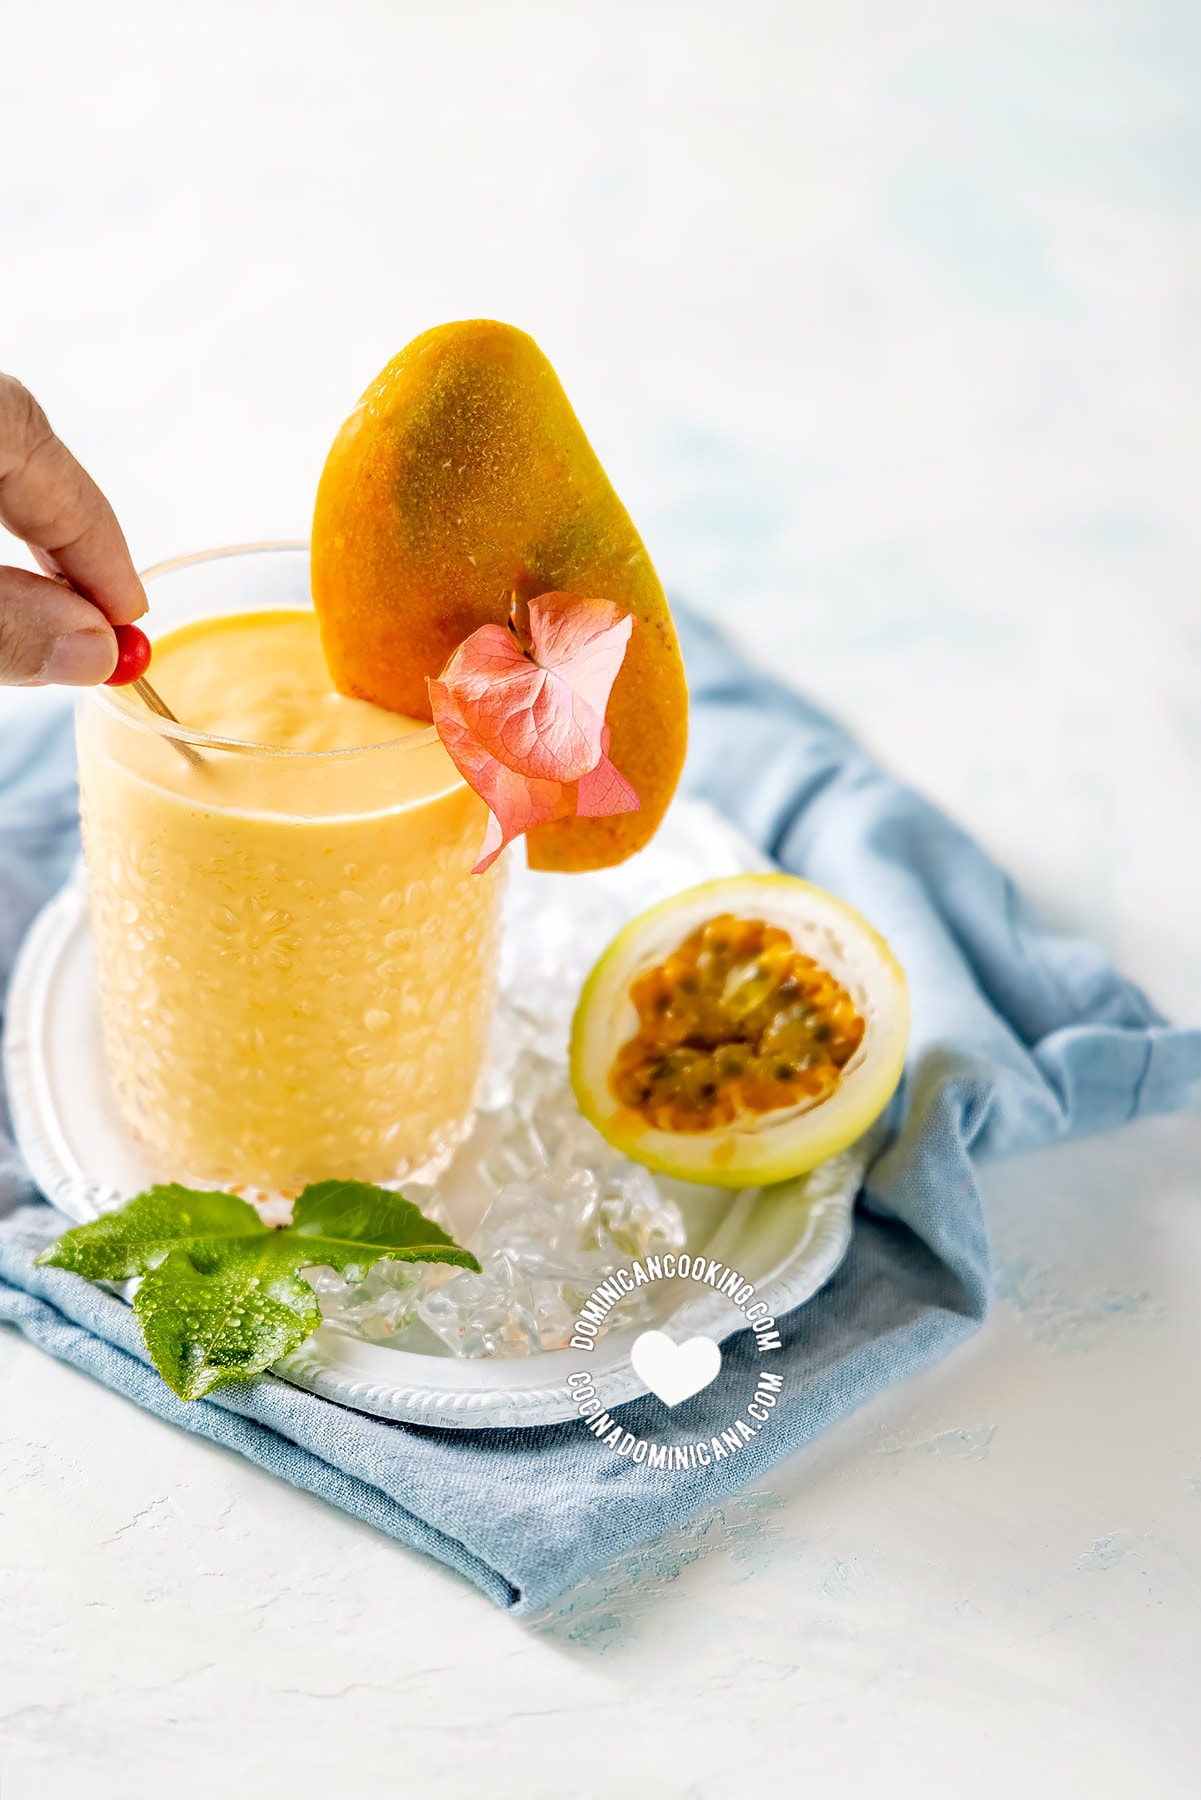 Batido de mango (passionfruit and mango smoothie).